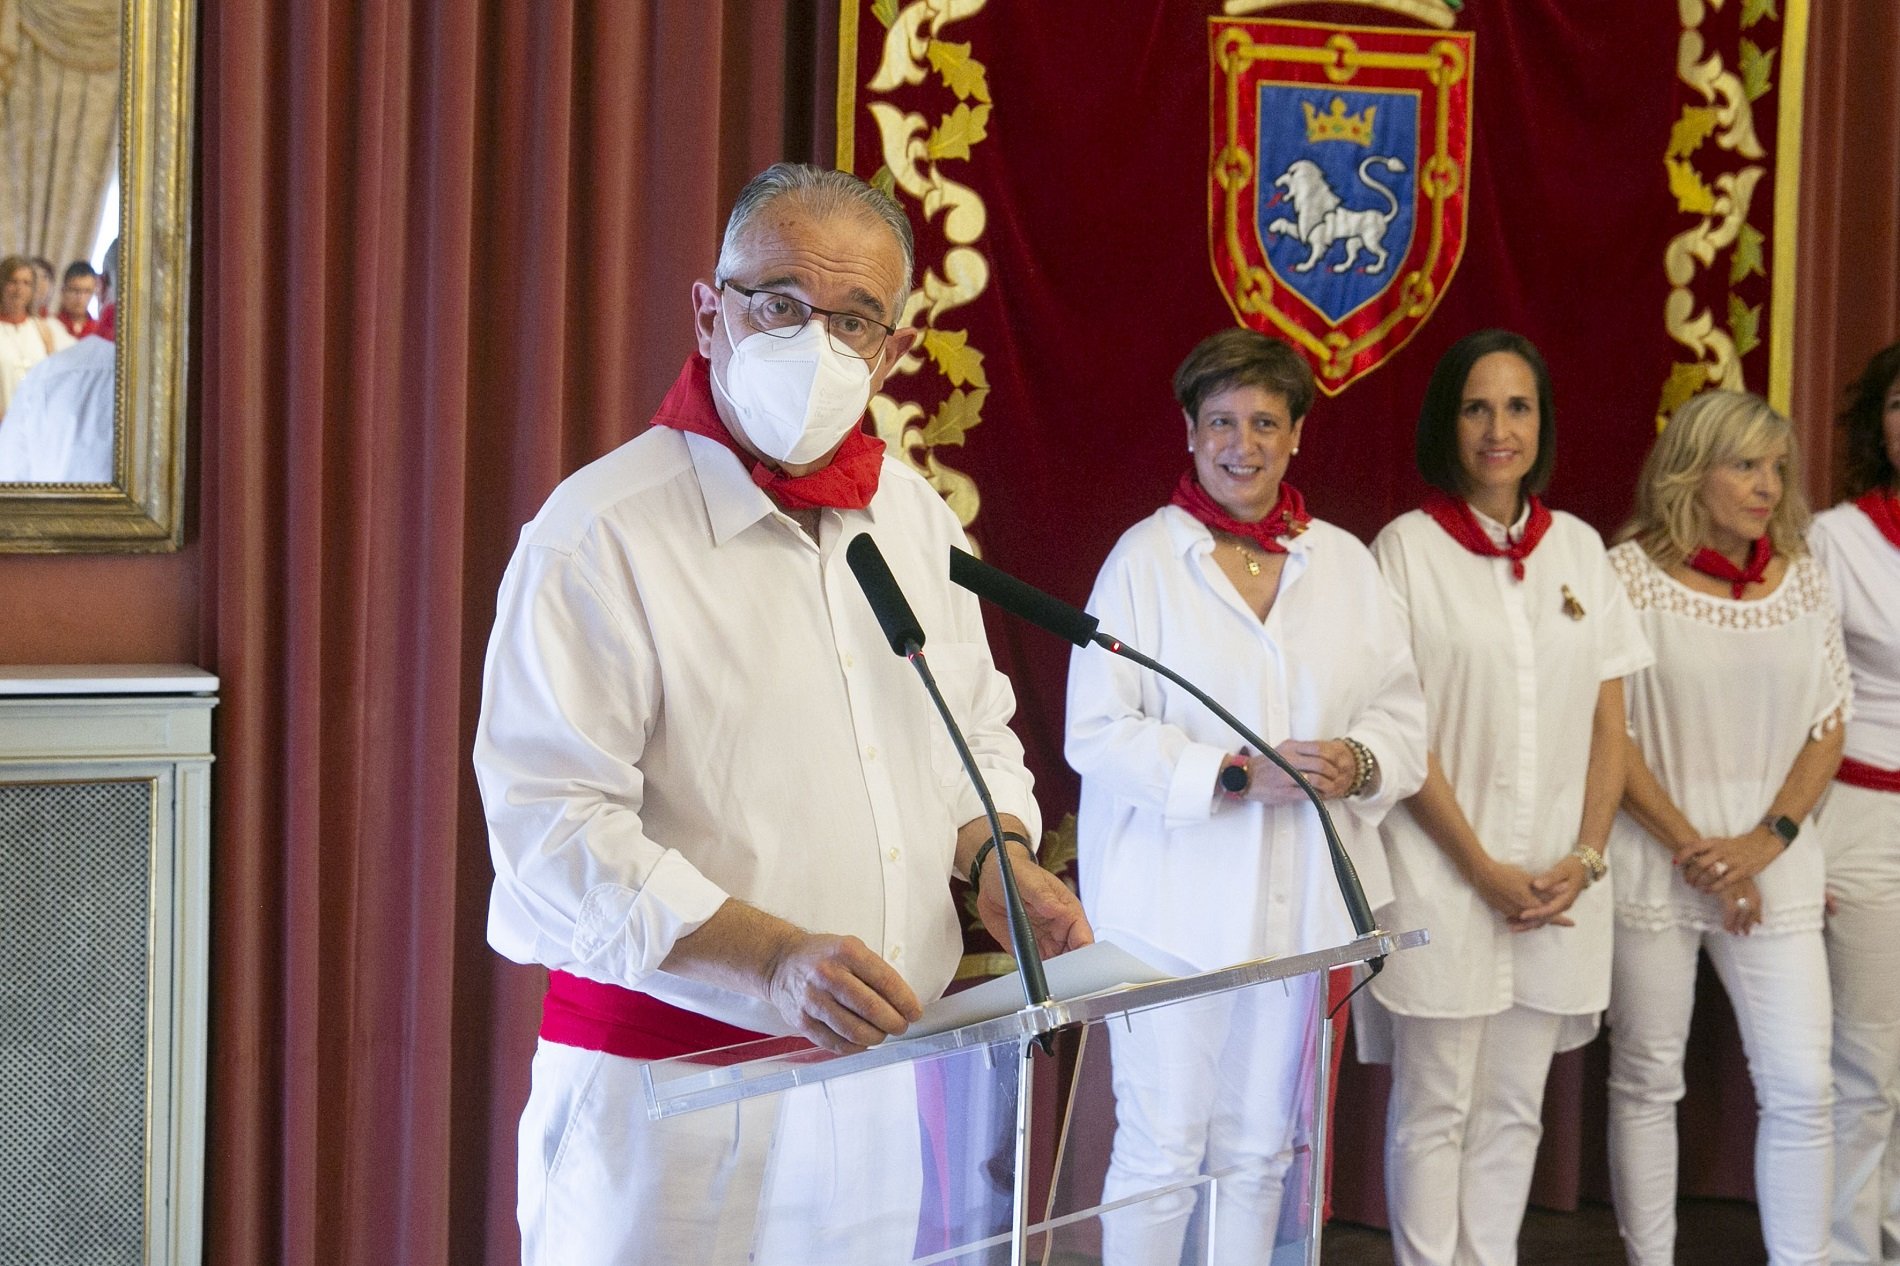 El alcalde de Pamplona, positivo en covid, mantiene su agenda en San Fermín